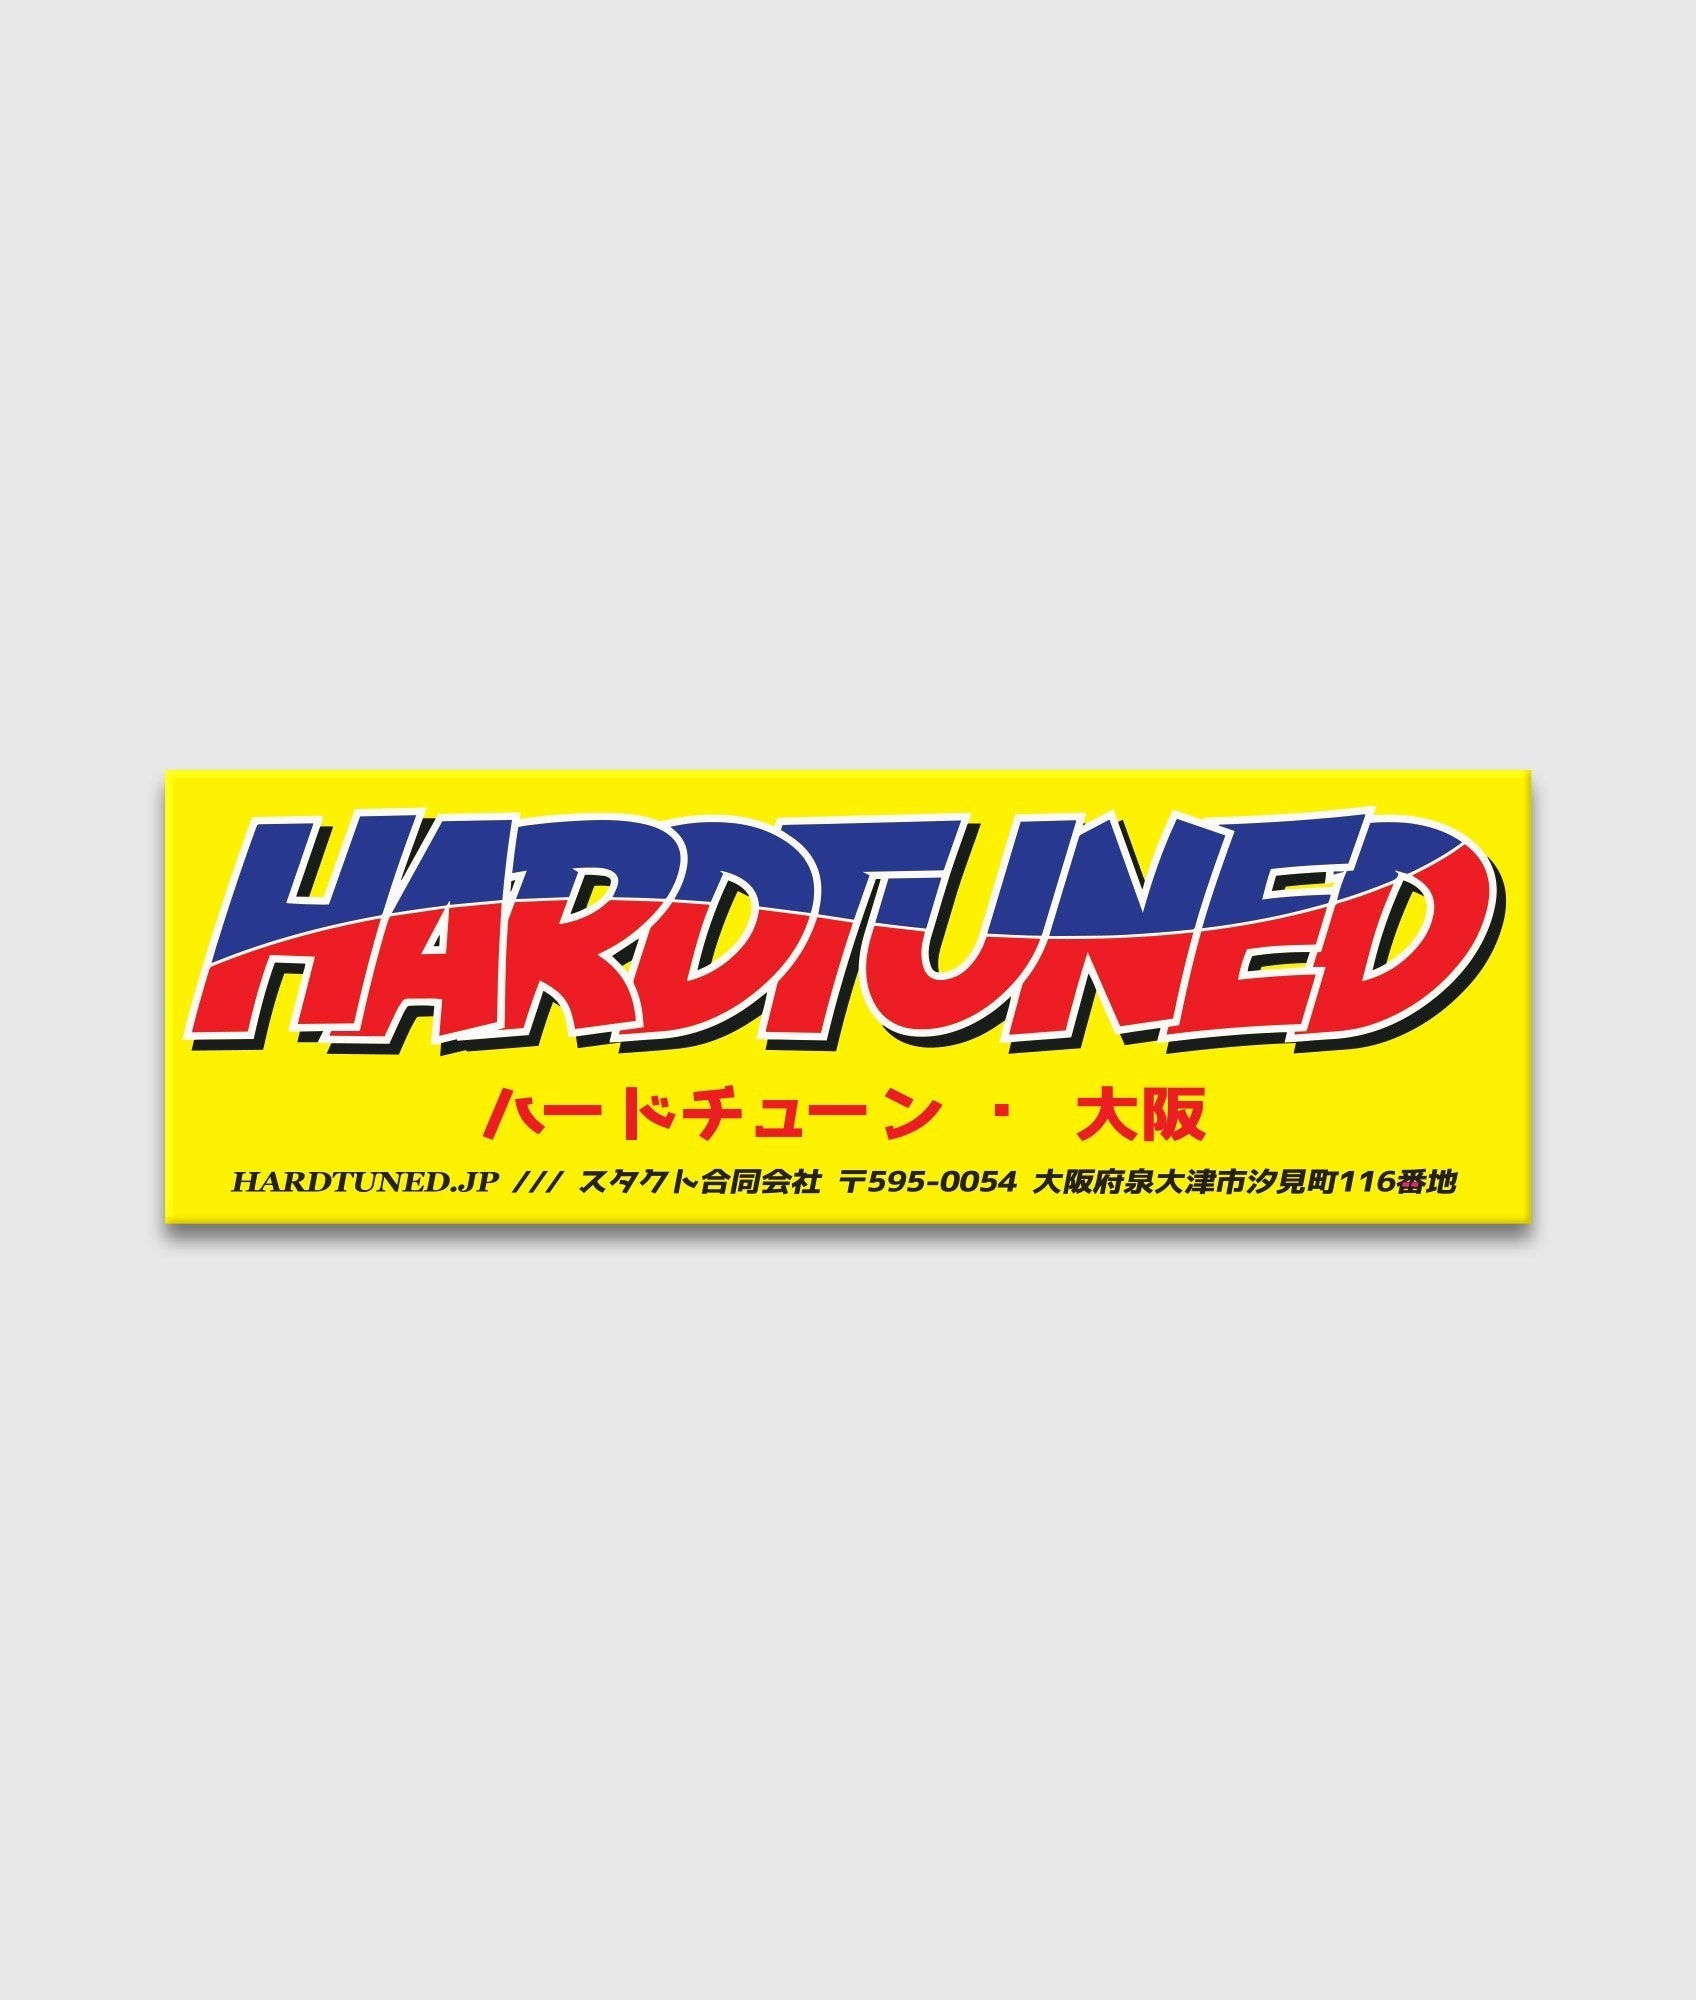 Hardtuned Garage - Hardtuned